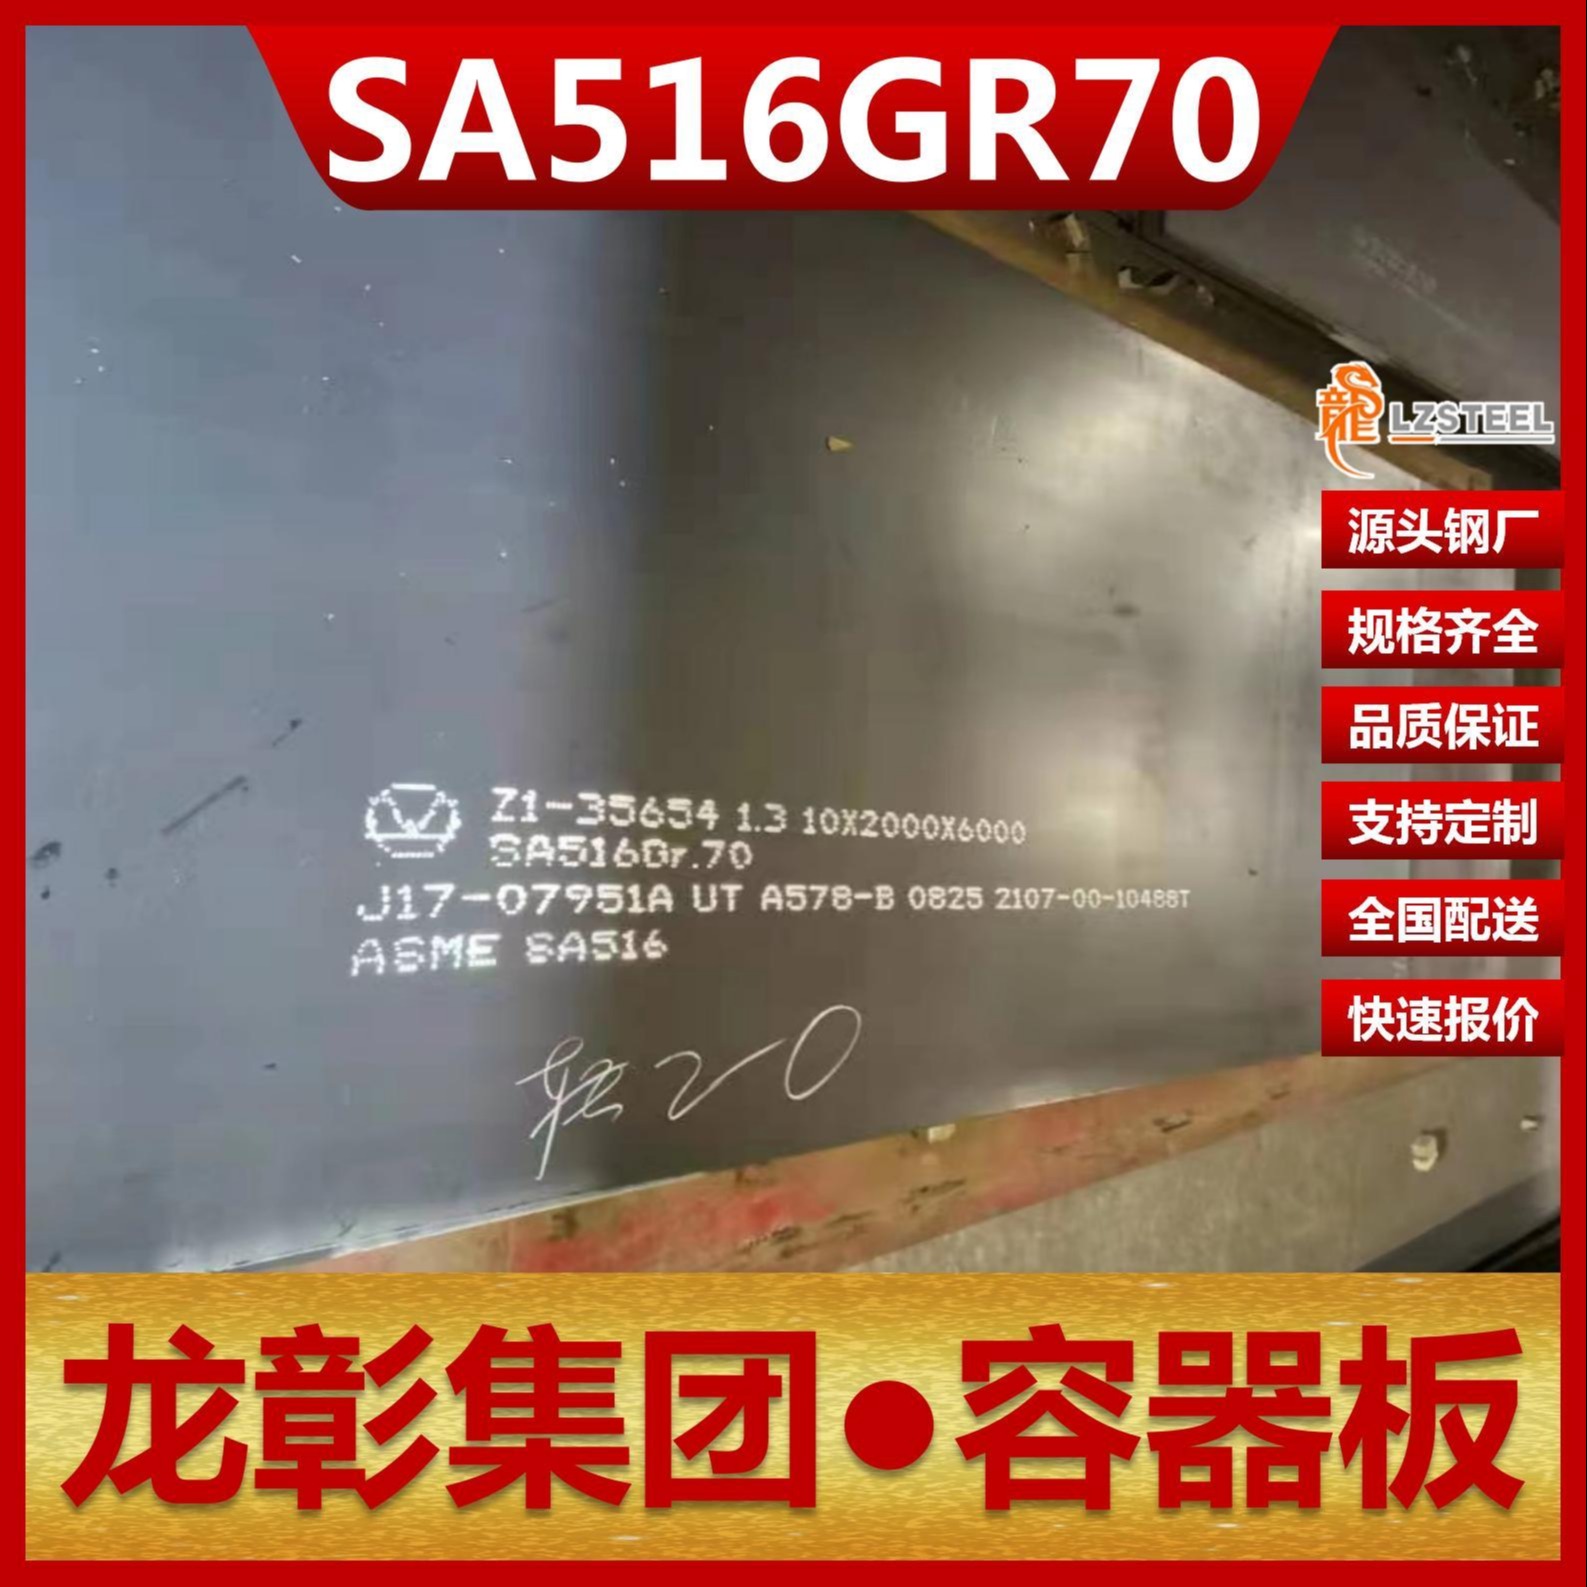 SA516Gr70容器板现货批零 龙彰集团主营钢板SA516Gr70压力容器板可开平分条